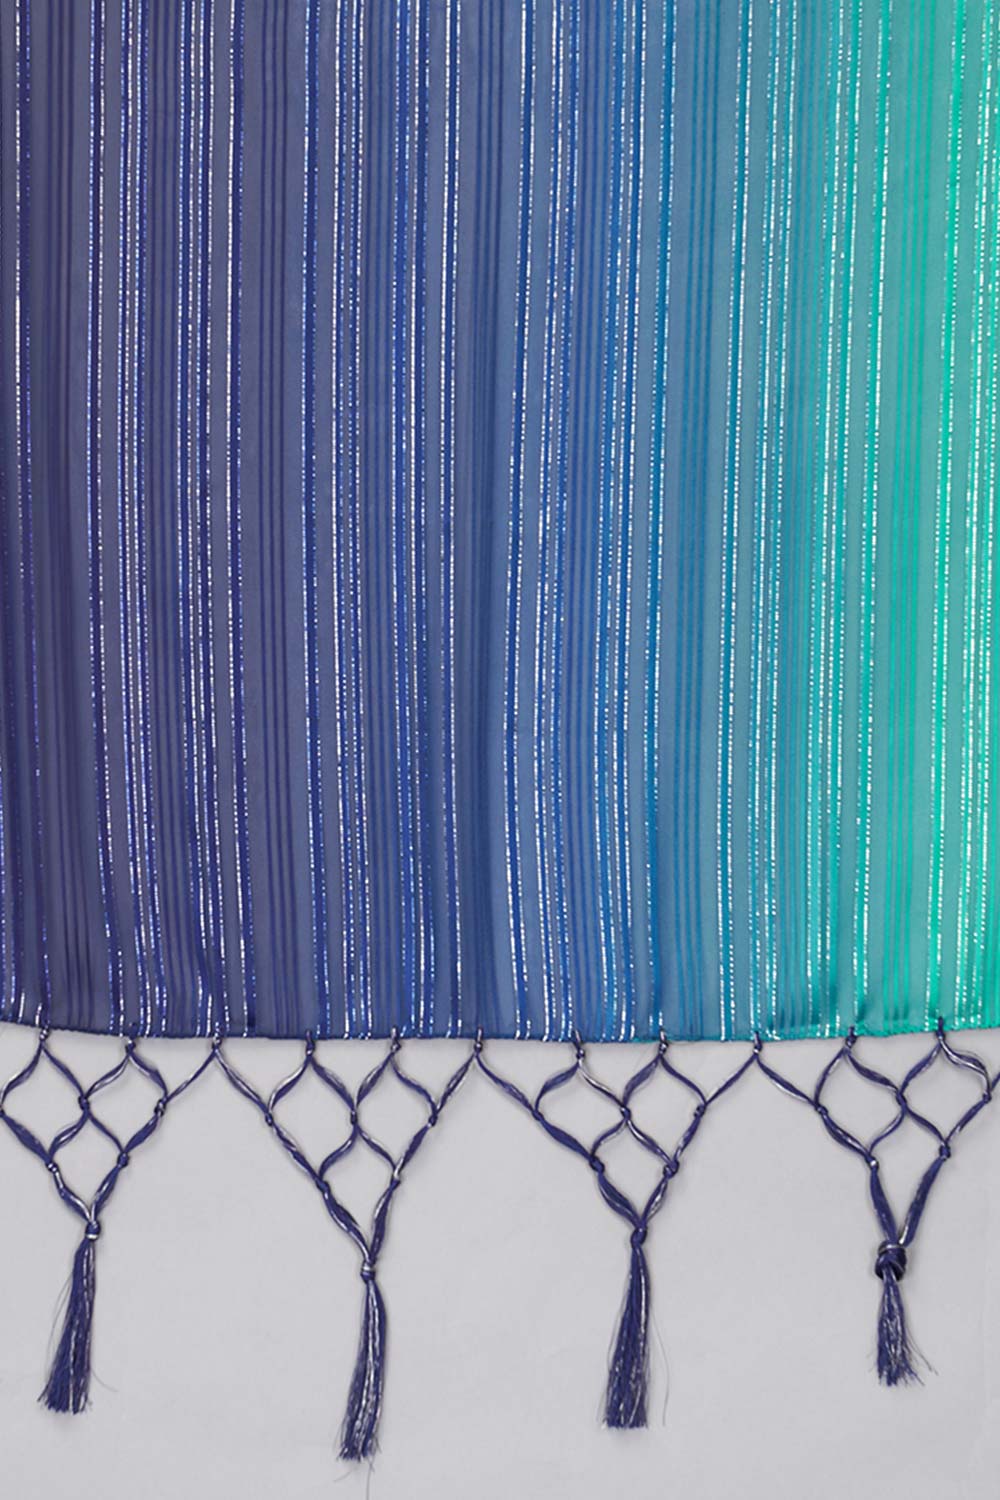 Buy Art Silk Woven Saree in Navy Blue - Zoom In